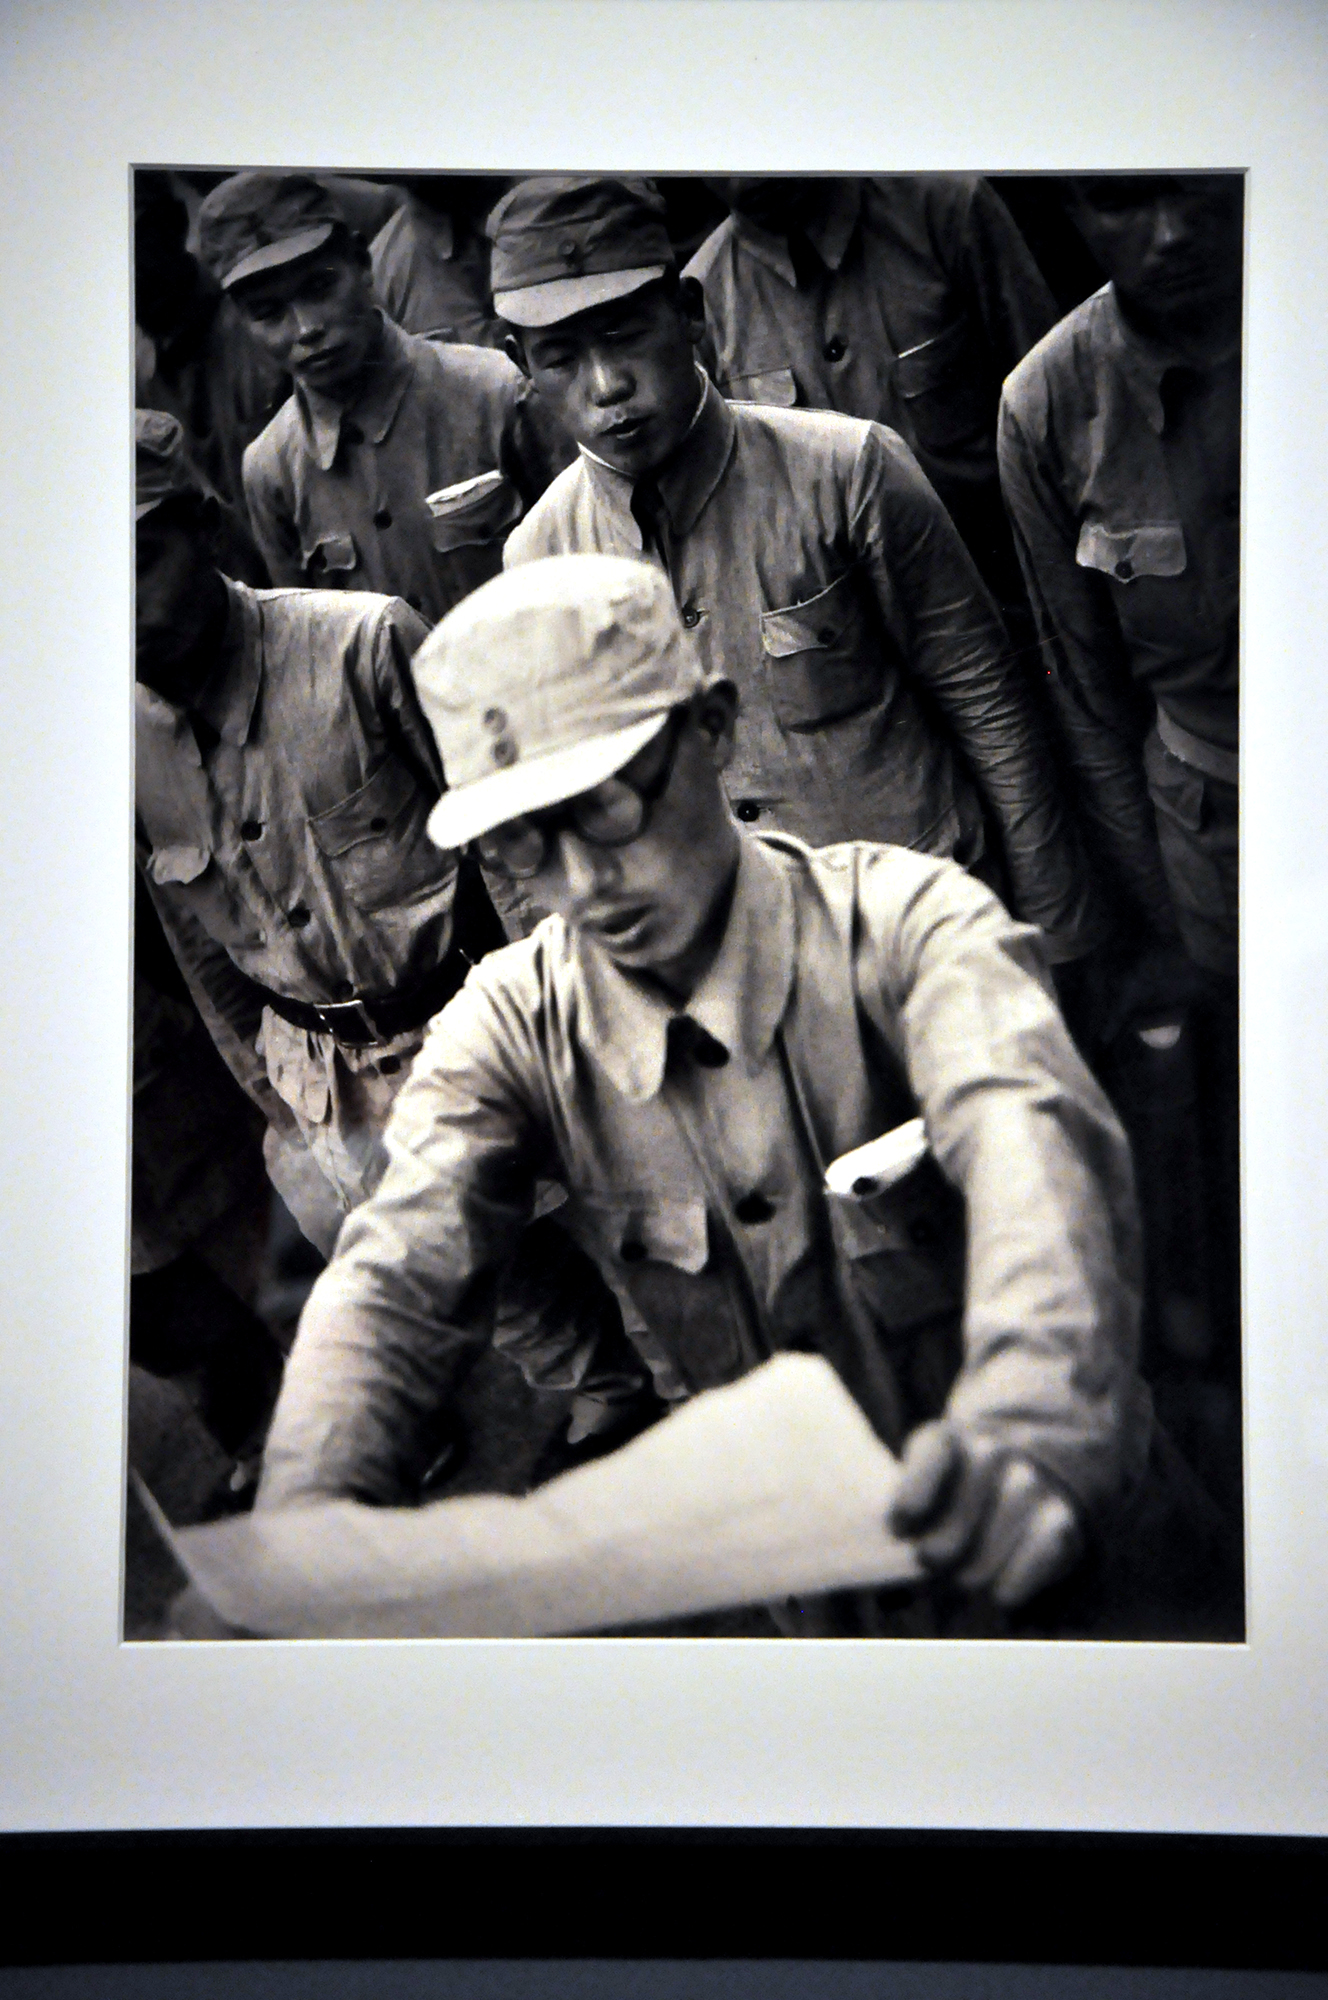 石少华镜头下1944年日本反战同盟成立期间的珍贵照片